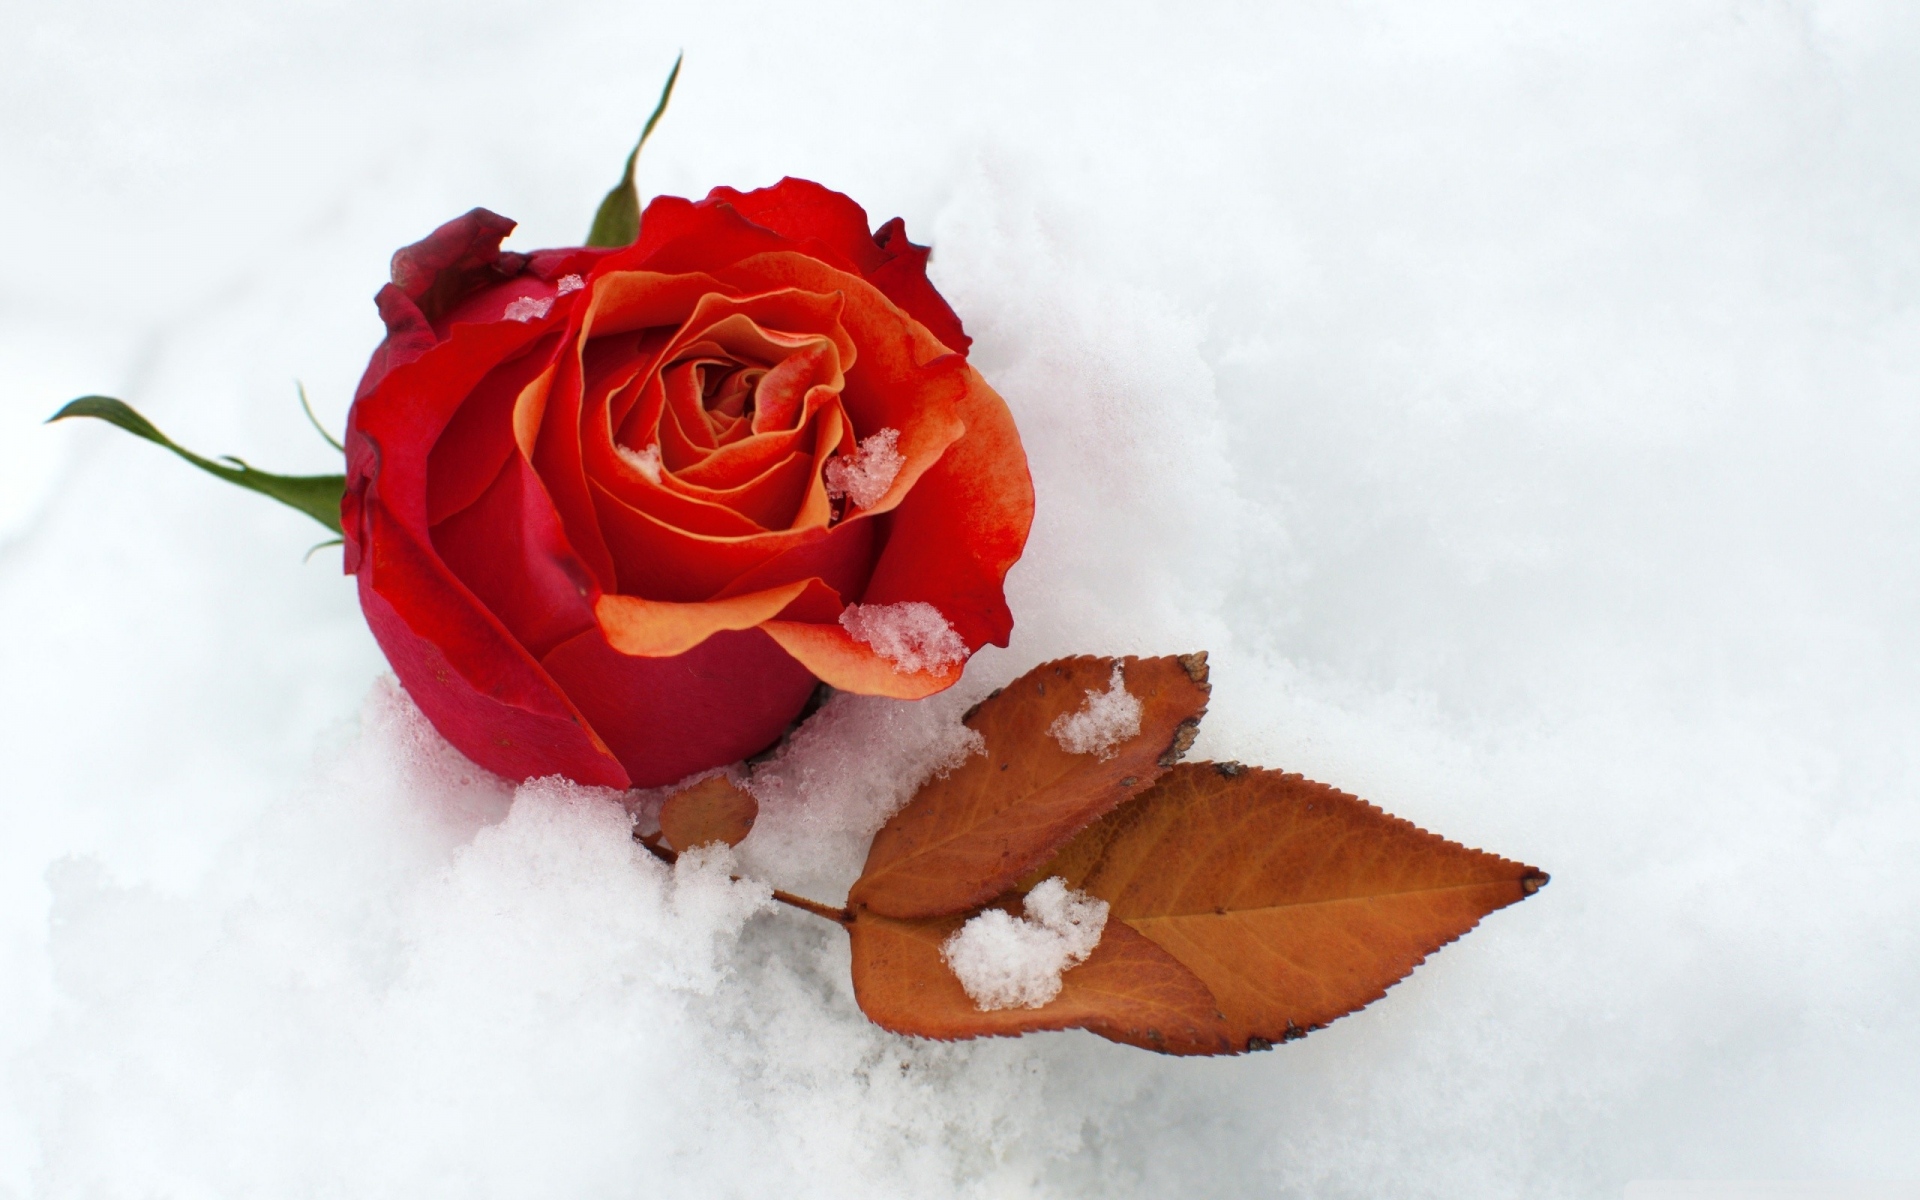 Картинки Роза, цветок, бутон, лист, снег, холод фото и обои на рабочий стол